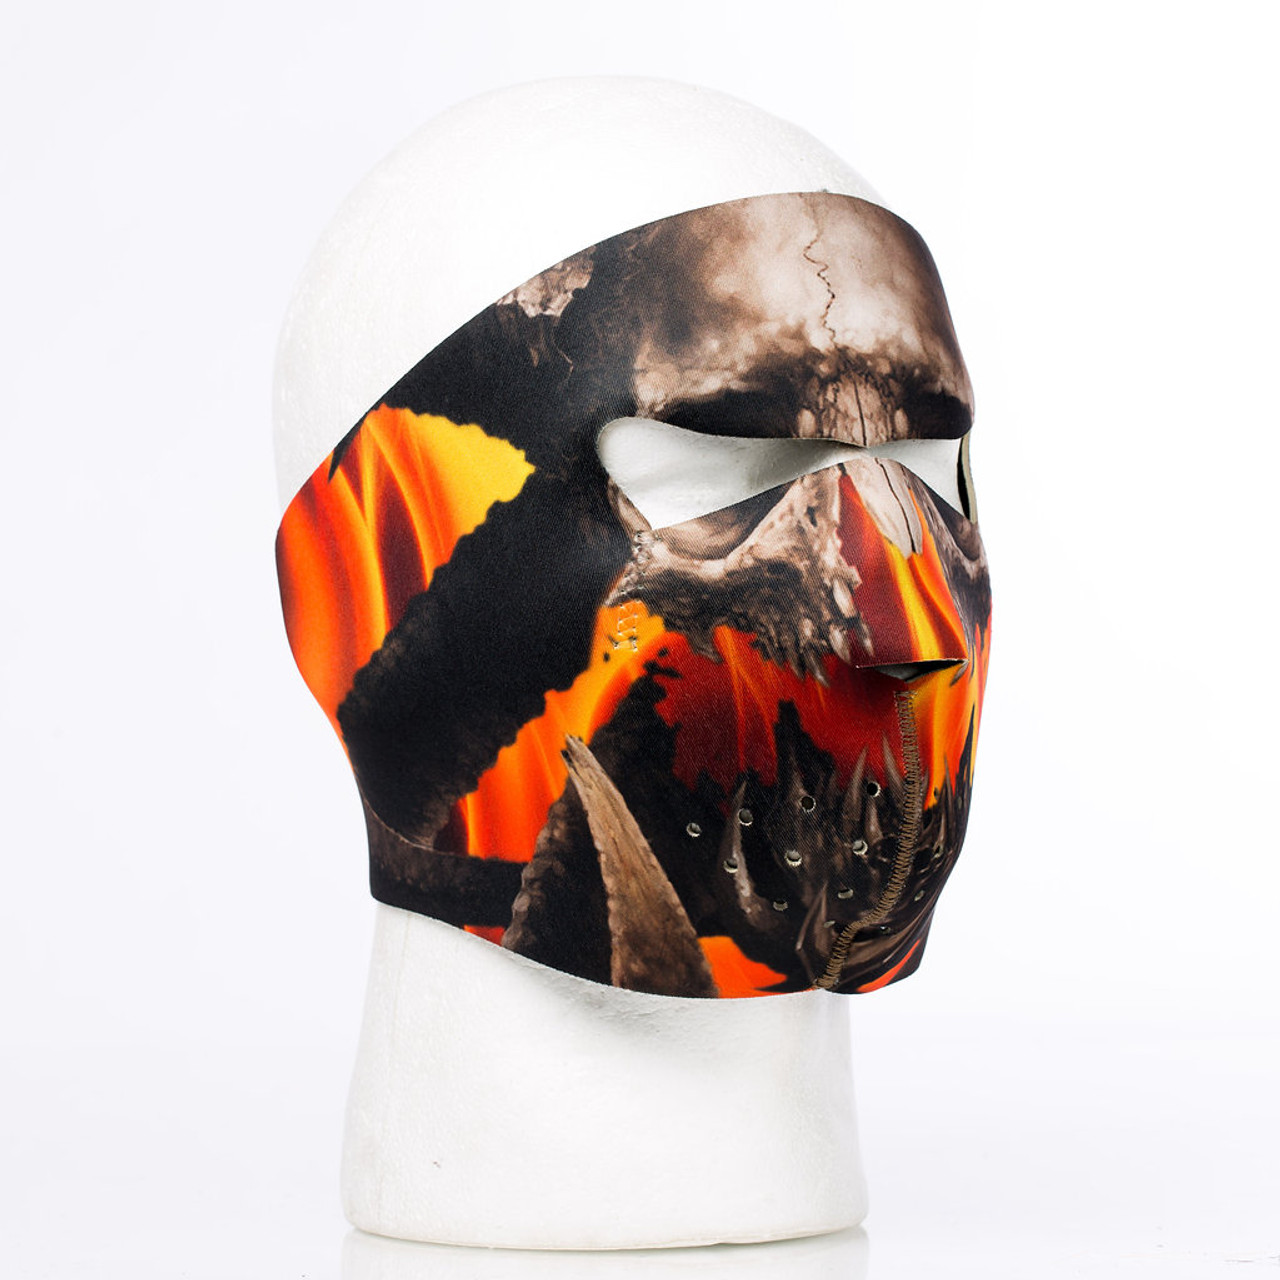 Ram Neoprene Face Mask - Iron Horse Helmets and Biker Masks